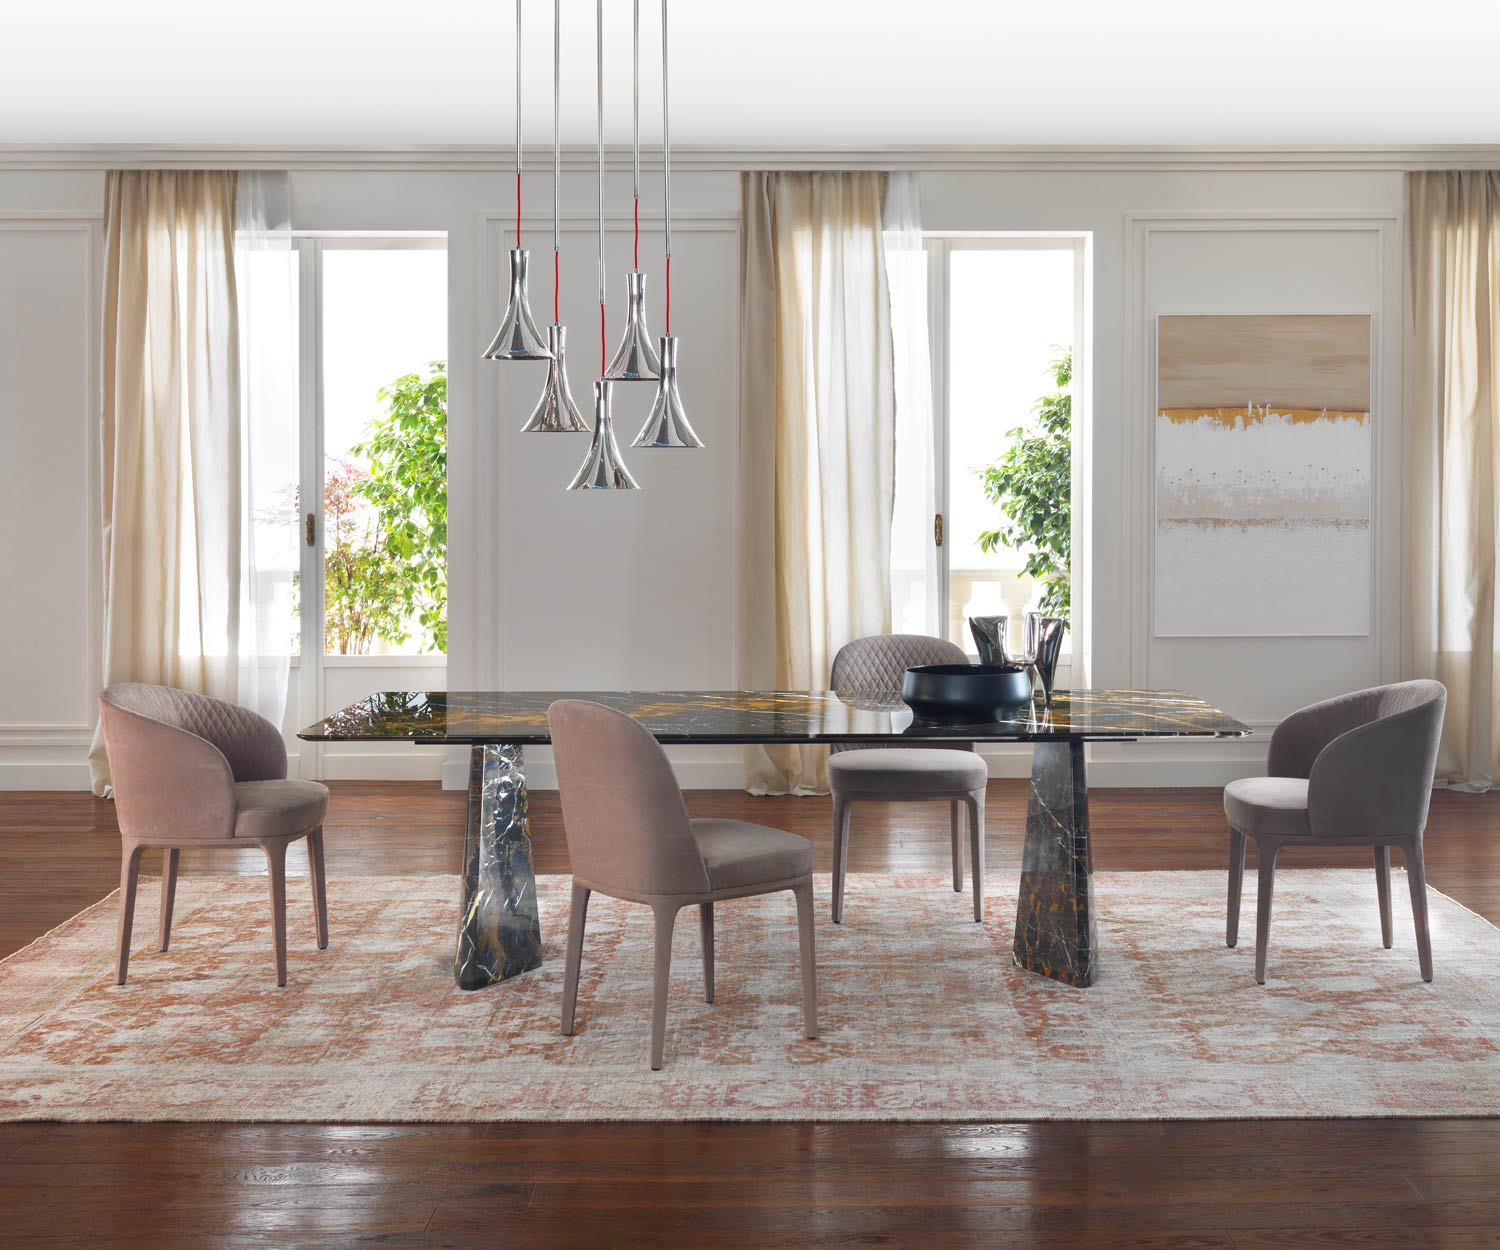 Tavolo da pranzo in marmo dal design elegante nella sala da pranzo con sedie raggruppate in un ensemble